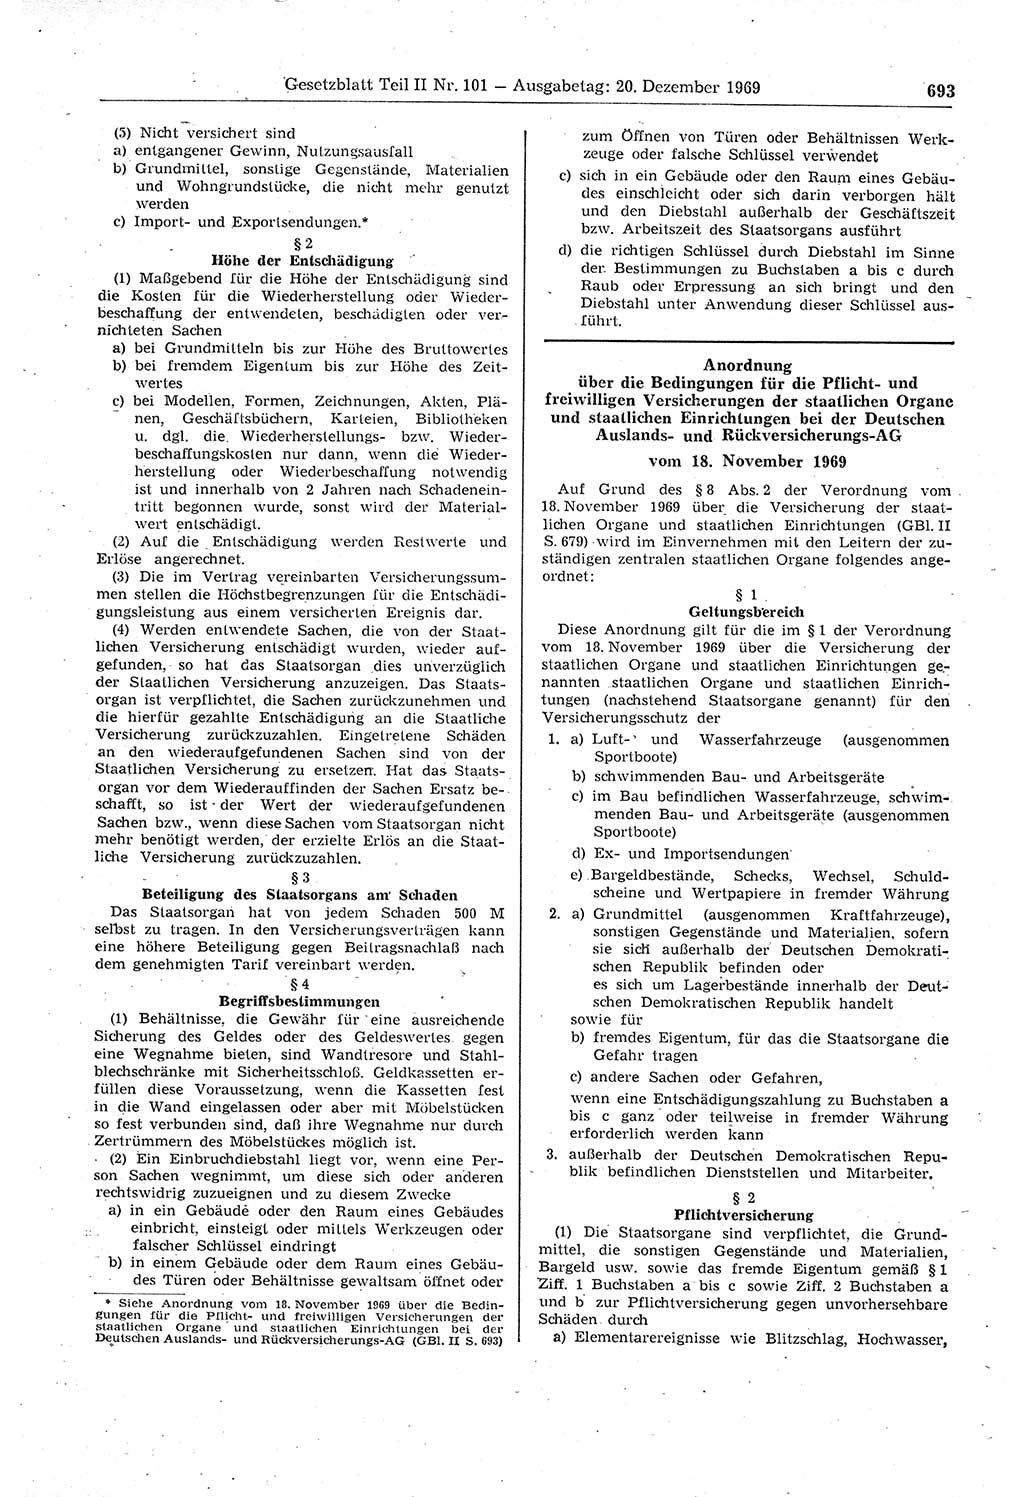 Gesetzblatt (GBl.) der Deutschen Demokratischen Republik (DDR) Teil ⅠⅠ 1969, Seite 693 (GBl. DDR ⅠⅠ 1969, S. 693)